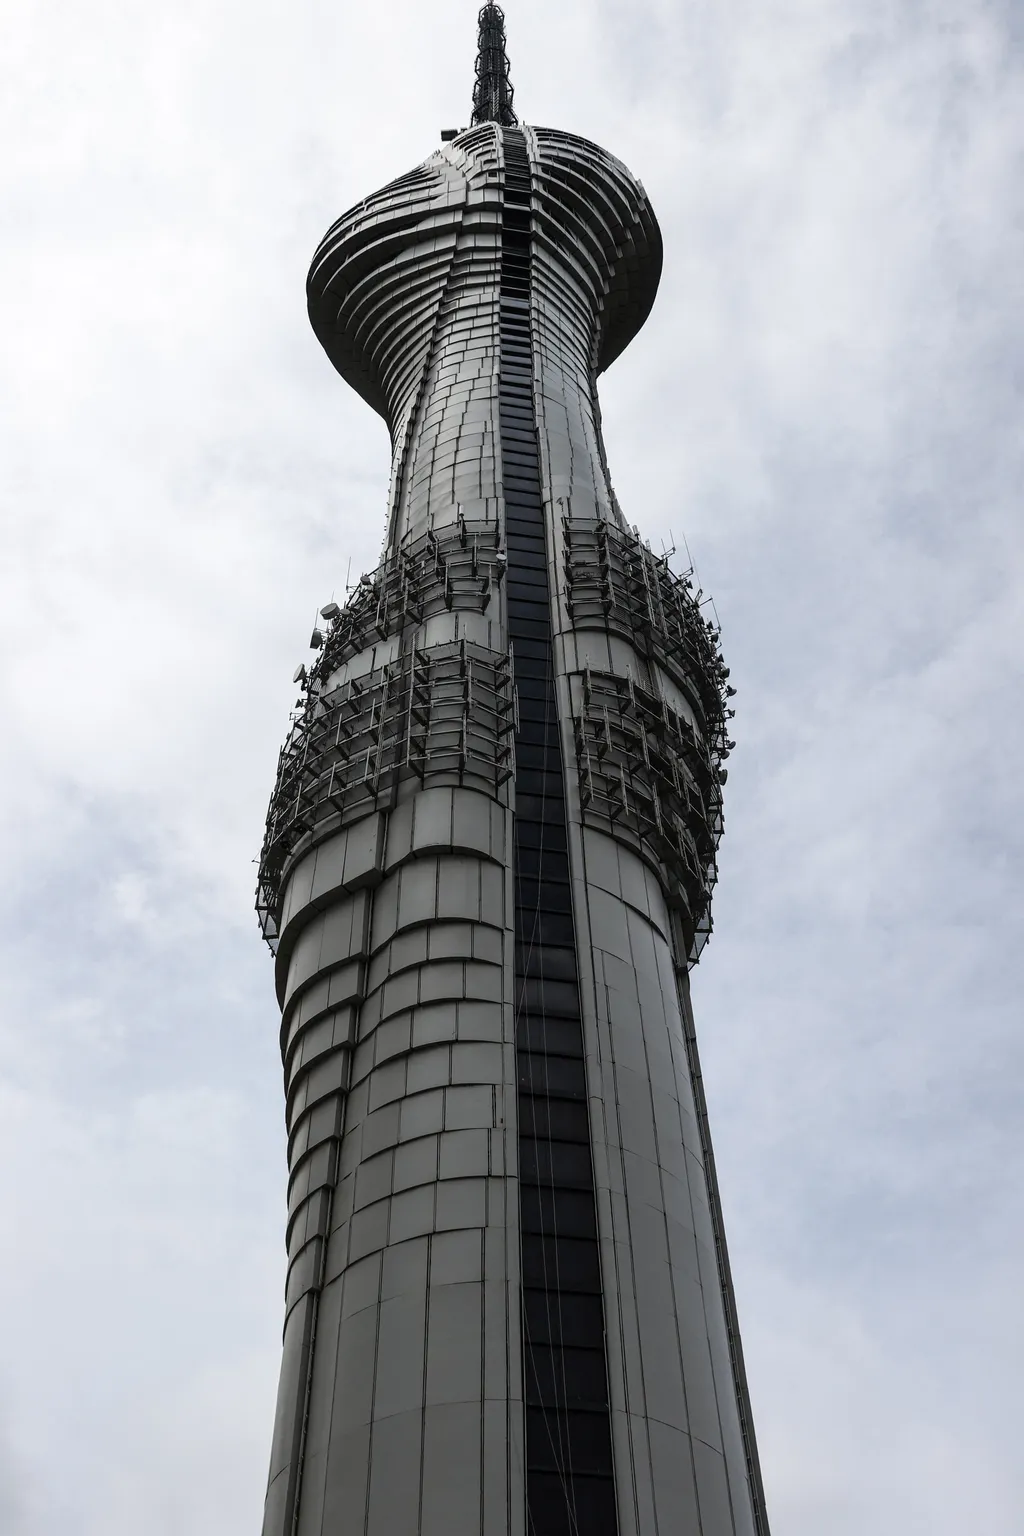 Camlica TVtorony Isztambul Törökország kilátó  Istanbul's highest structure Camlica Tower opens its door to visitors Camlica Tower,Istanbul,Turkey Vertical 